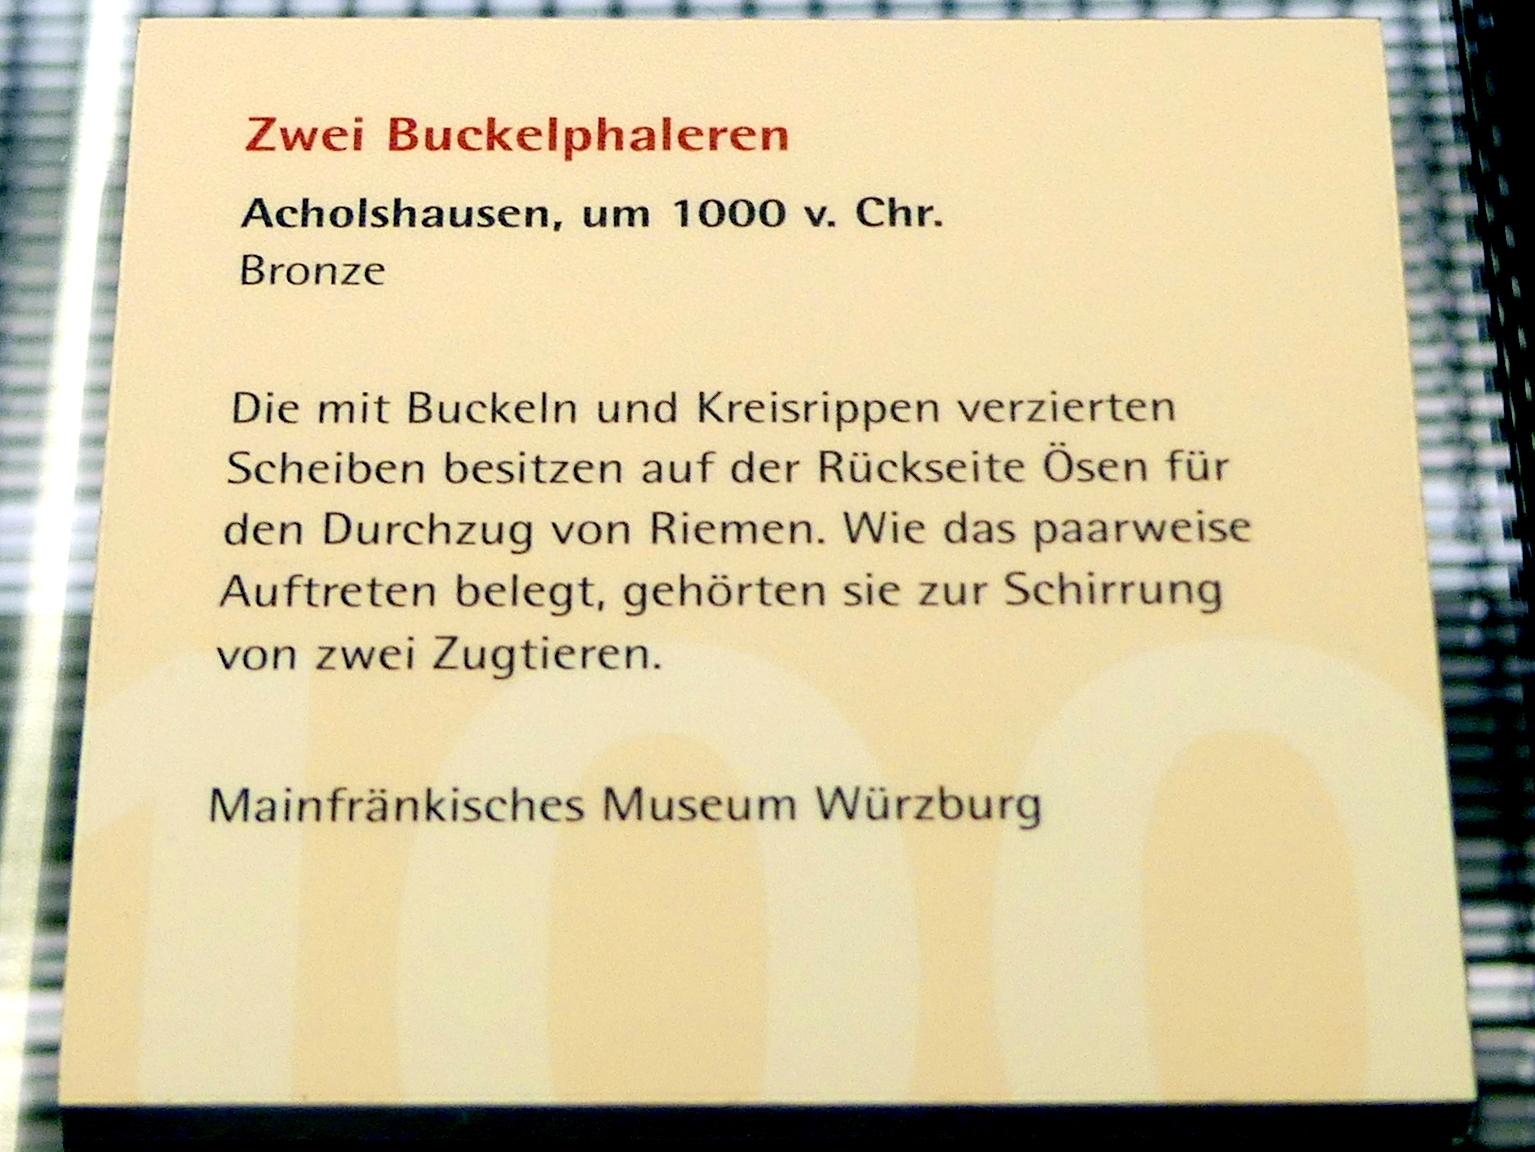 Zwei Buckelphaleren, Urnenfelderzeit, 1400 - 700 v. Chr., 1000 v. Chr., Bild 2/2